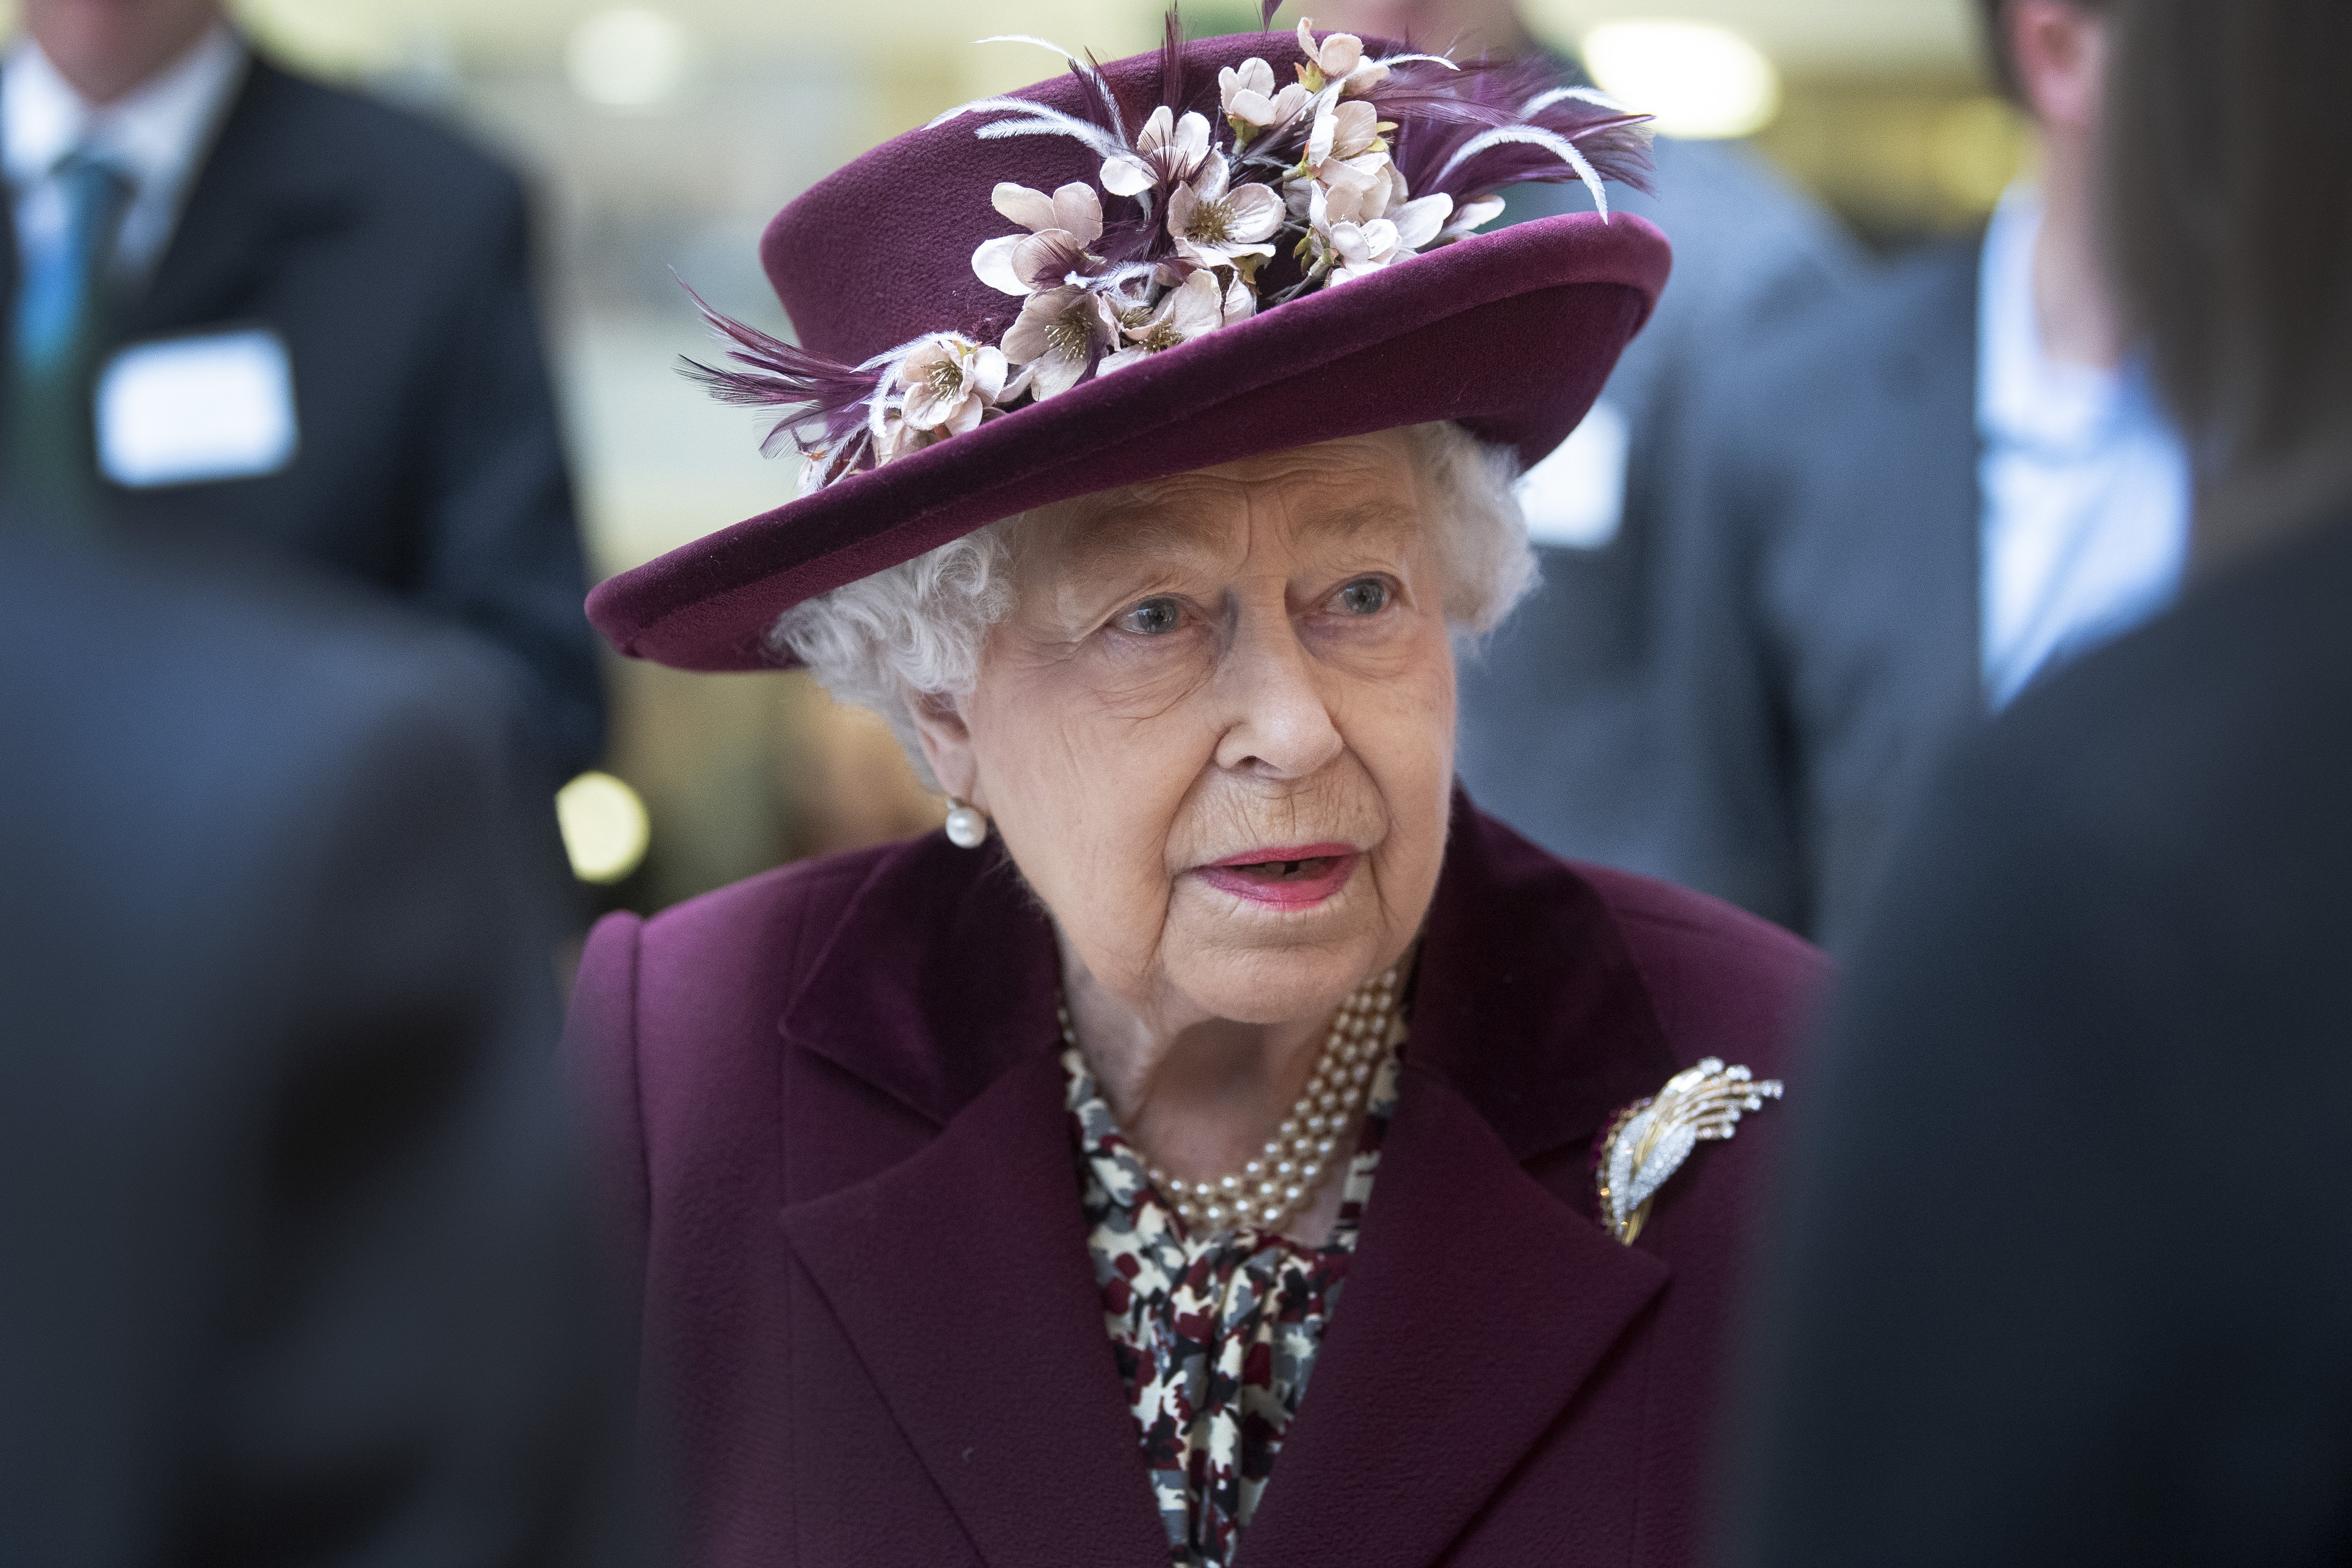 La Reina Elizabeth II habla con oficiales del MI5 durante una visita a la sede del MI5 en Thames House el 25 de febrero de 2020 en Londres, Inglaterra. | Foto: Getty Images